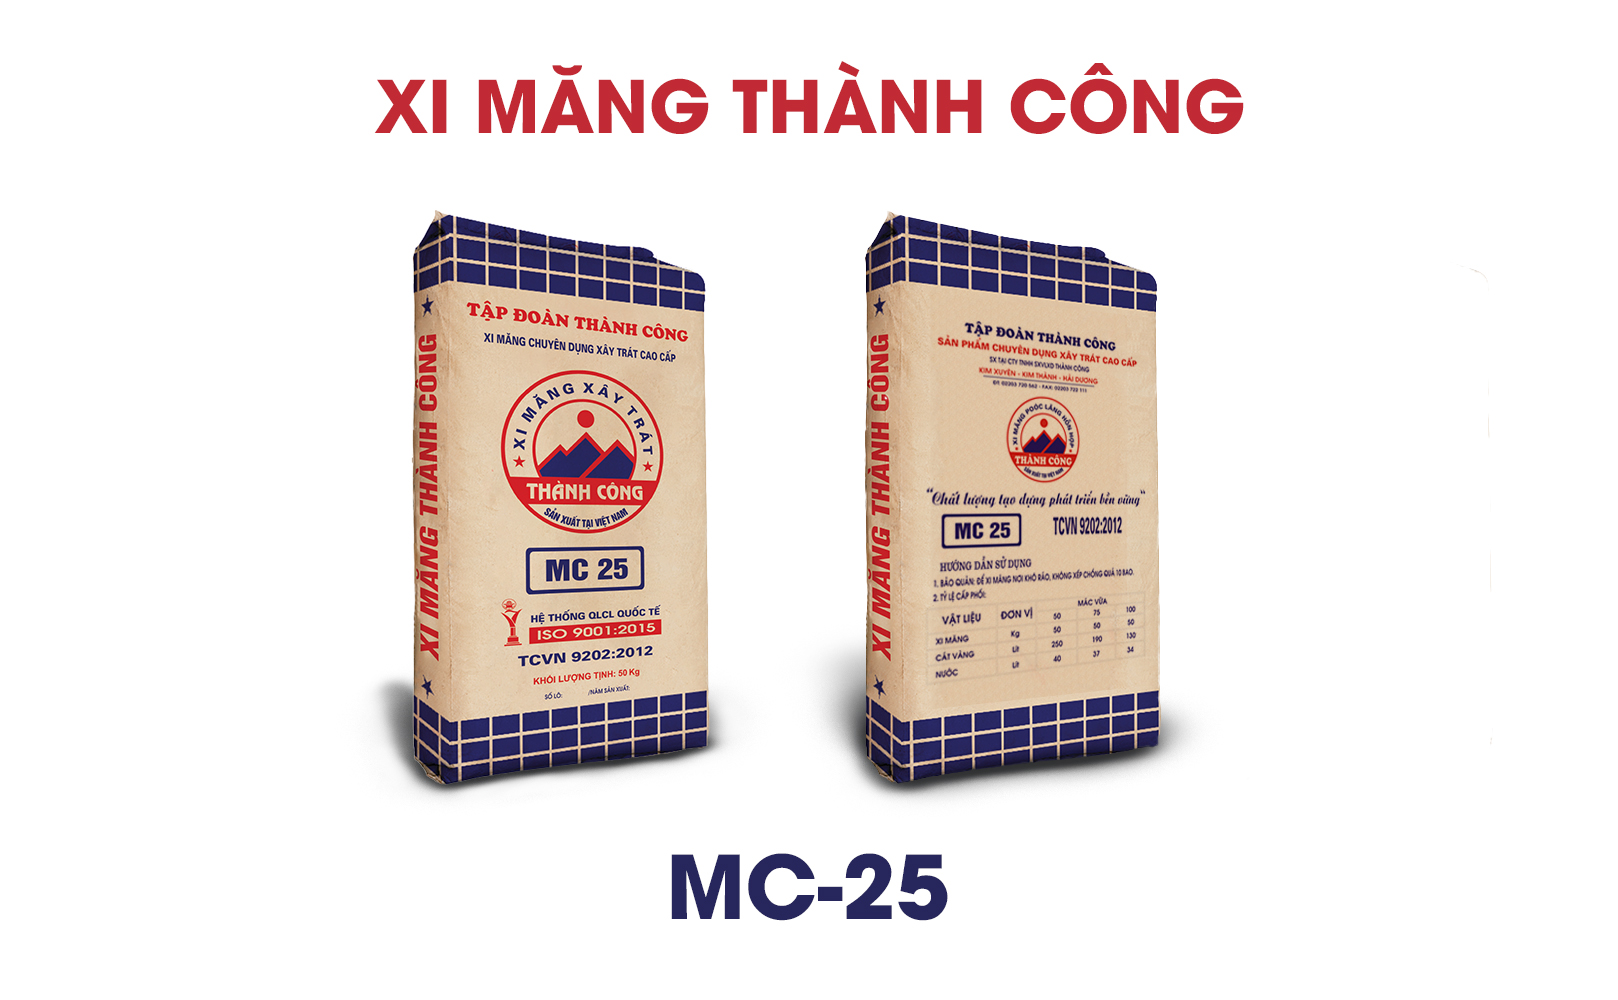 Xi măng xây trát cao cấp Thành Công MC25